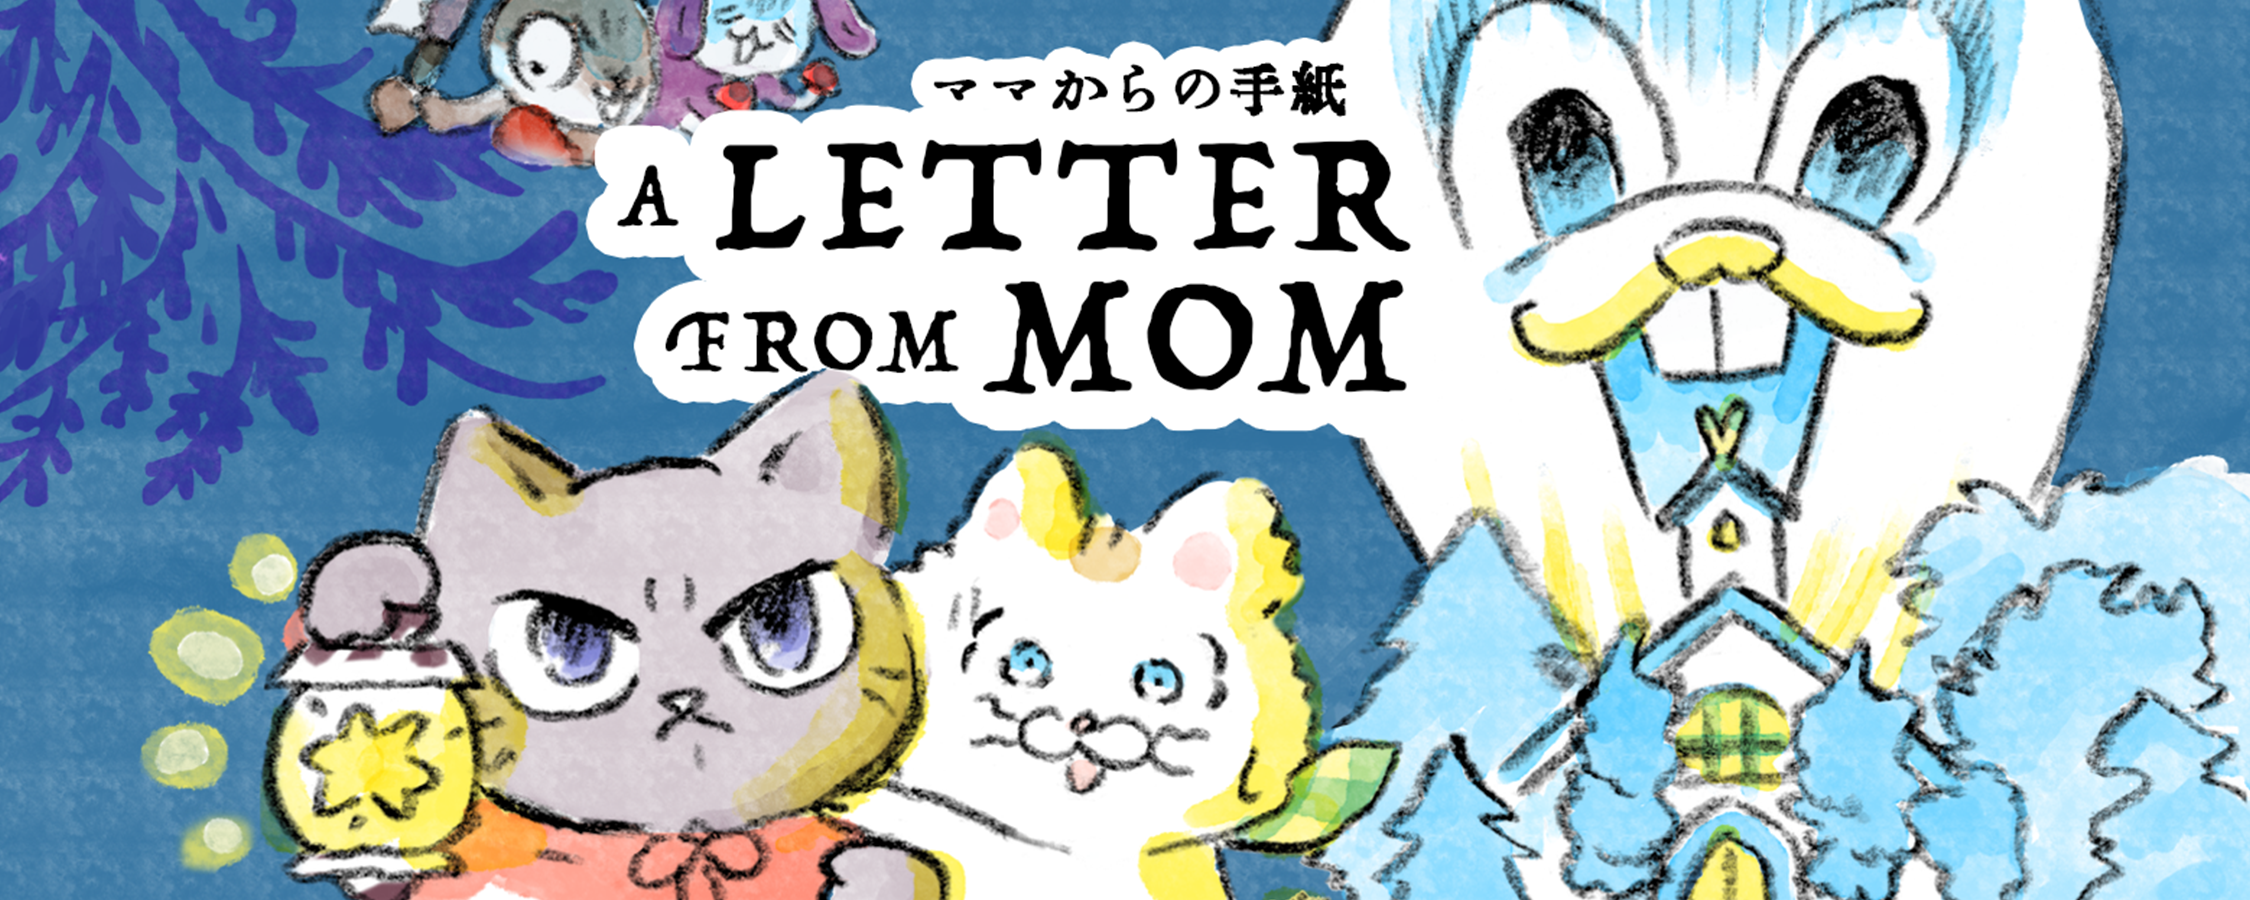 「ママからの手紙」のページを作成しました。